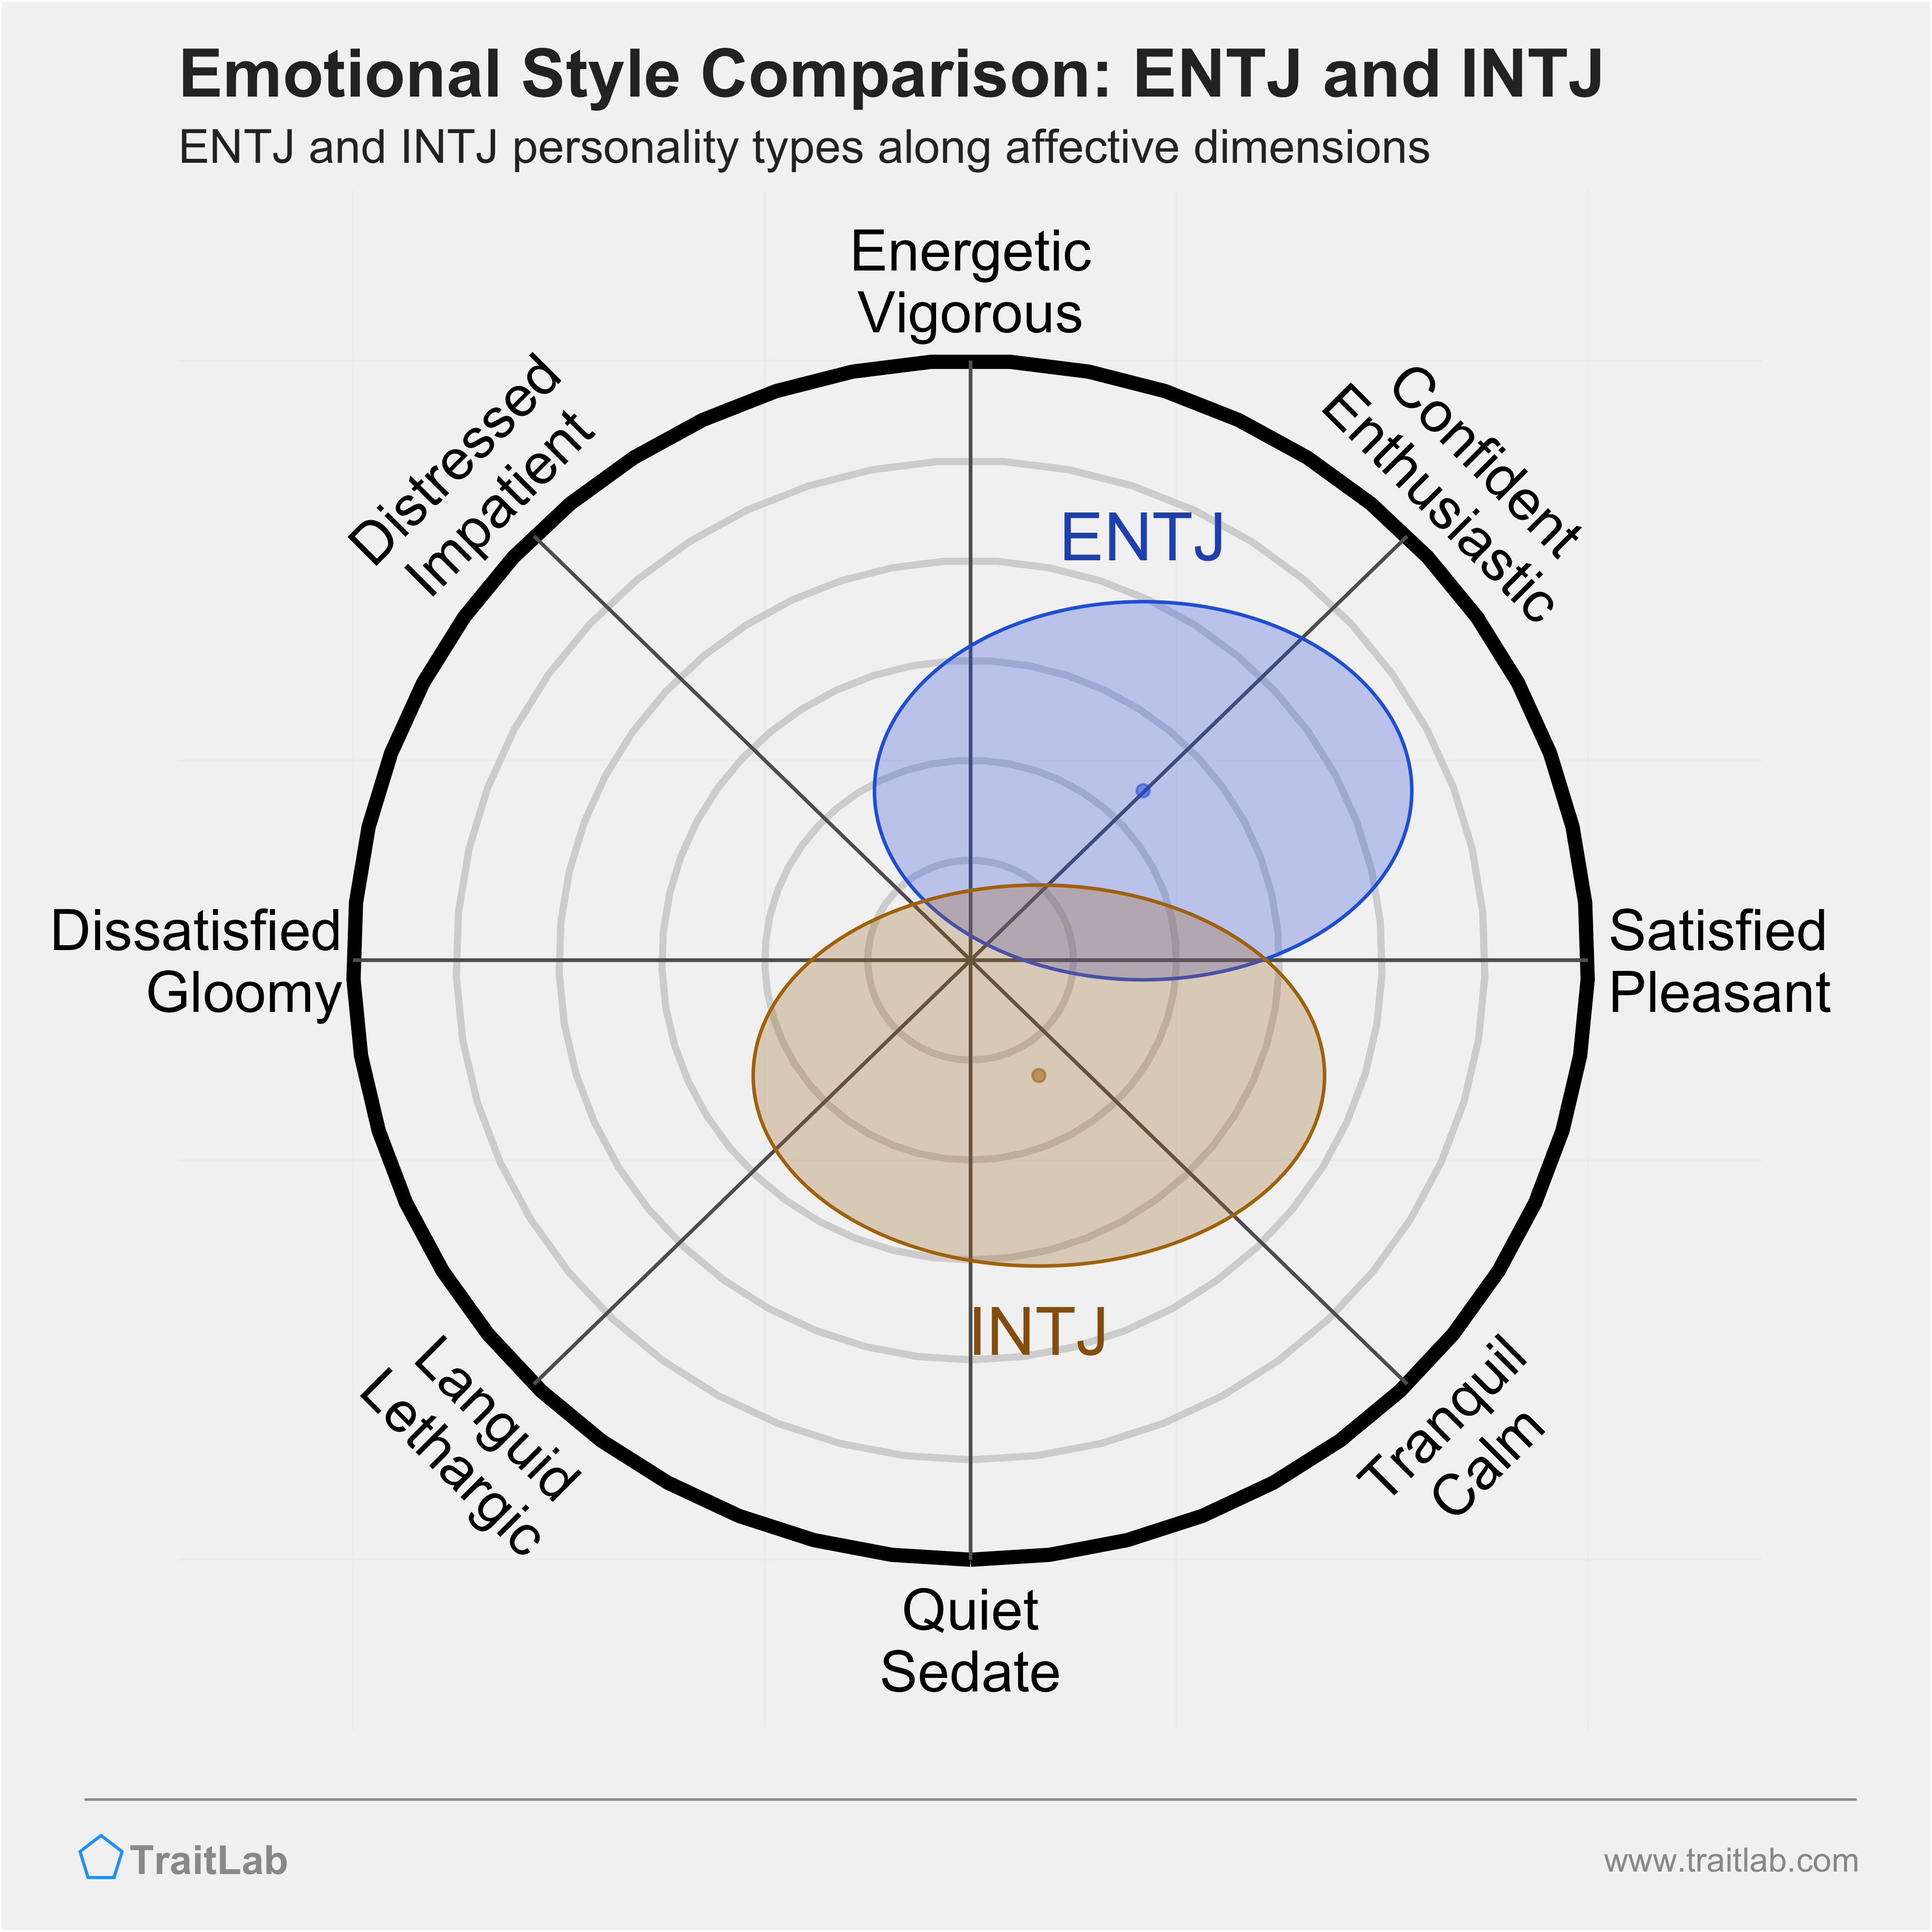 ENTJ and INTJ comparison across emotional (affective) dimensions